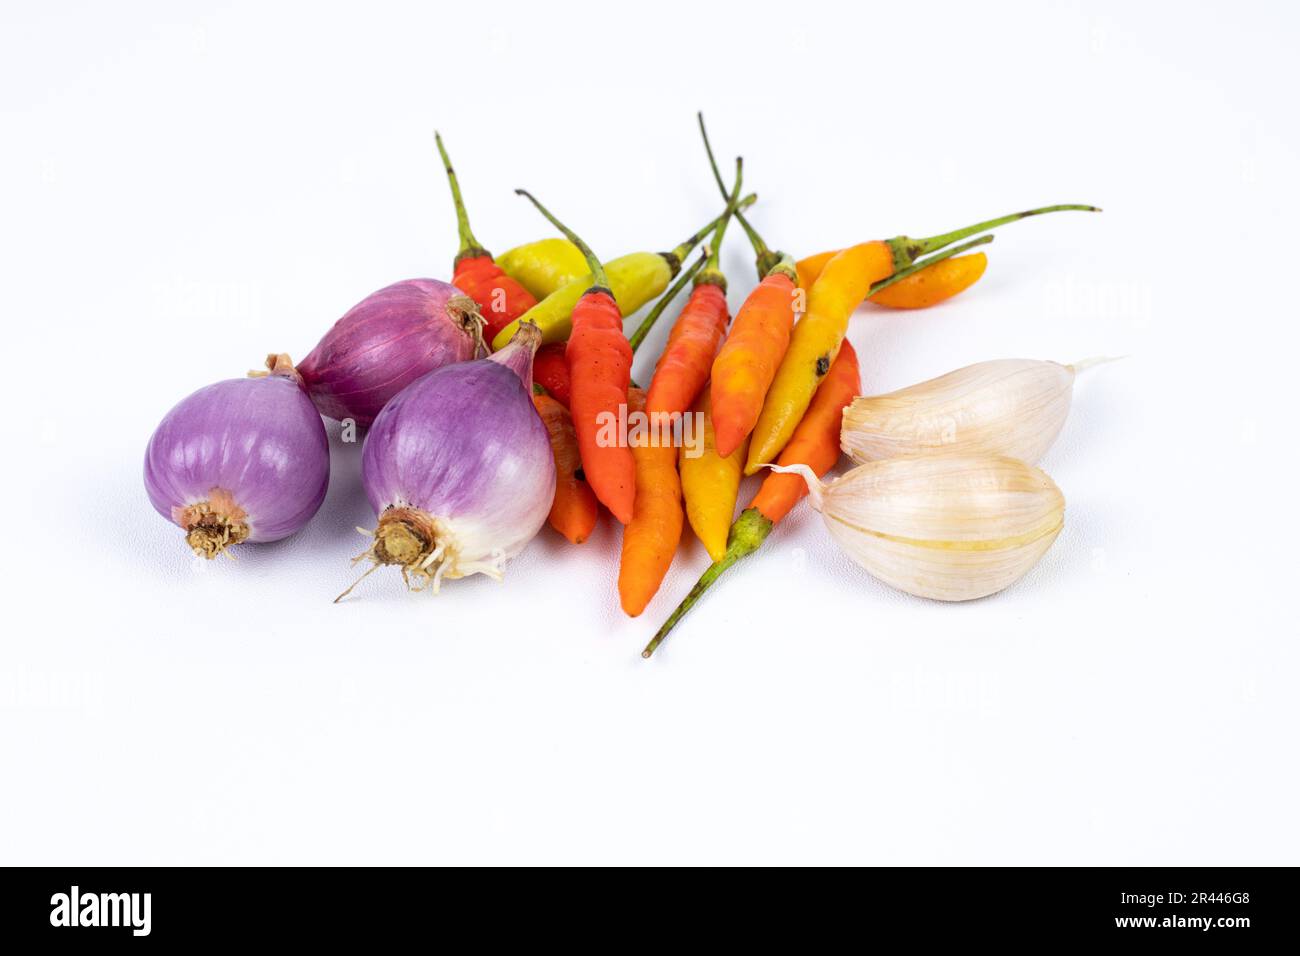 Condimenti: peperoncino, peperoncino riccio e cipolla rossa, scalogni isolati su fondo bianco Foto Stock